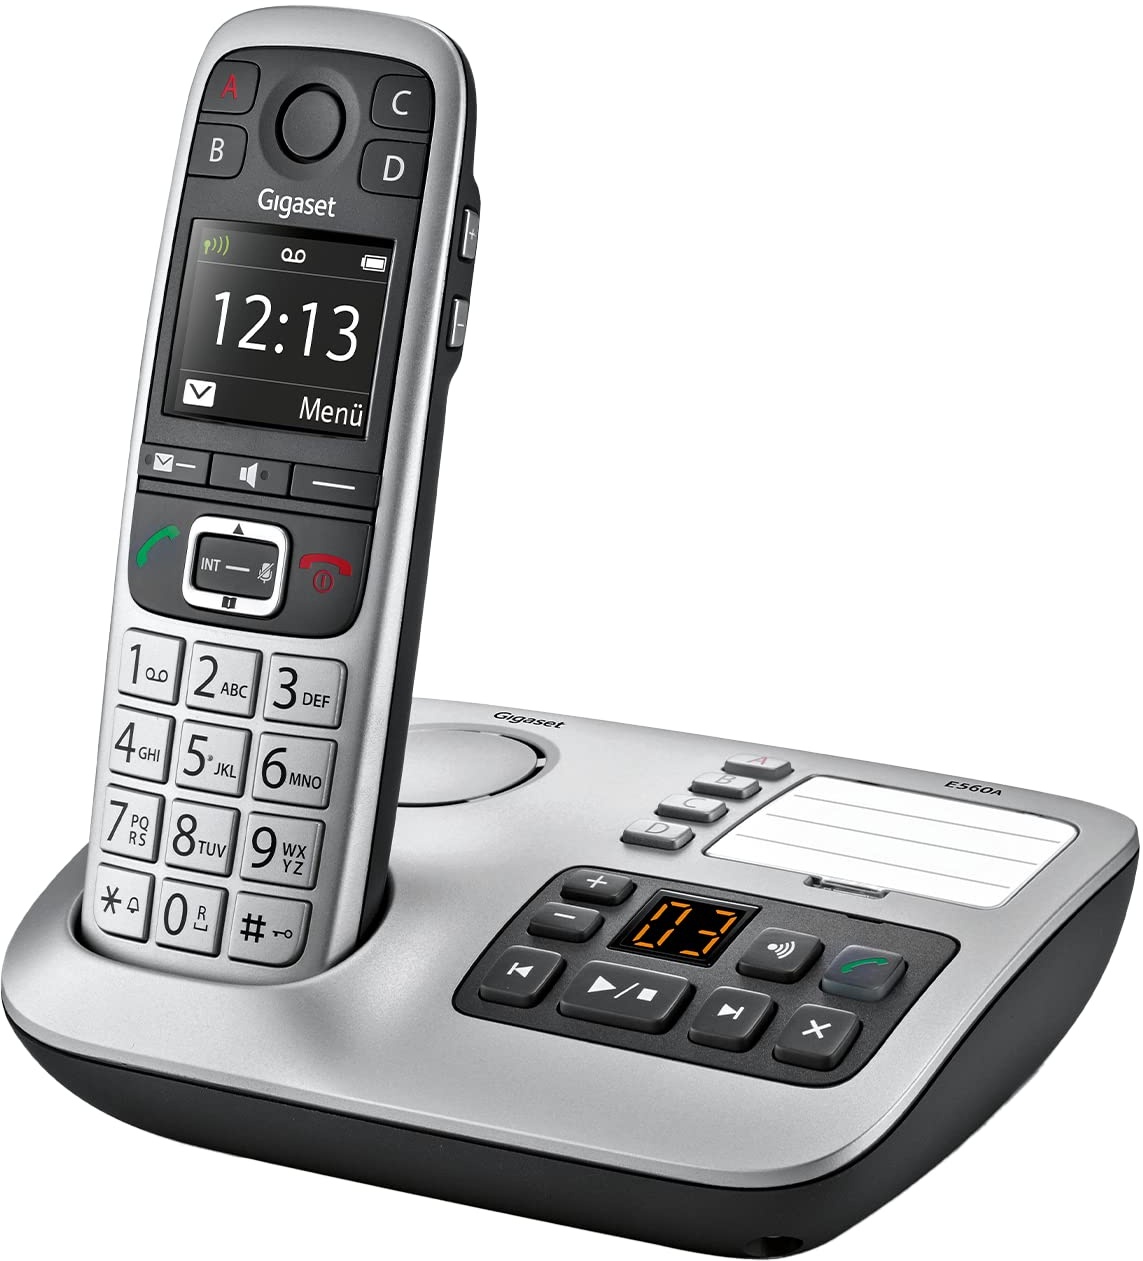 Gigaset E560A - Schnurloses Senioren DECT-Telefon - Mobilteil mit Anrufbeantworter - Farb-Display - Freisprechfunktion - Grosse Tasten - Telefon mit SOS Taste - Analog Telefon, platin